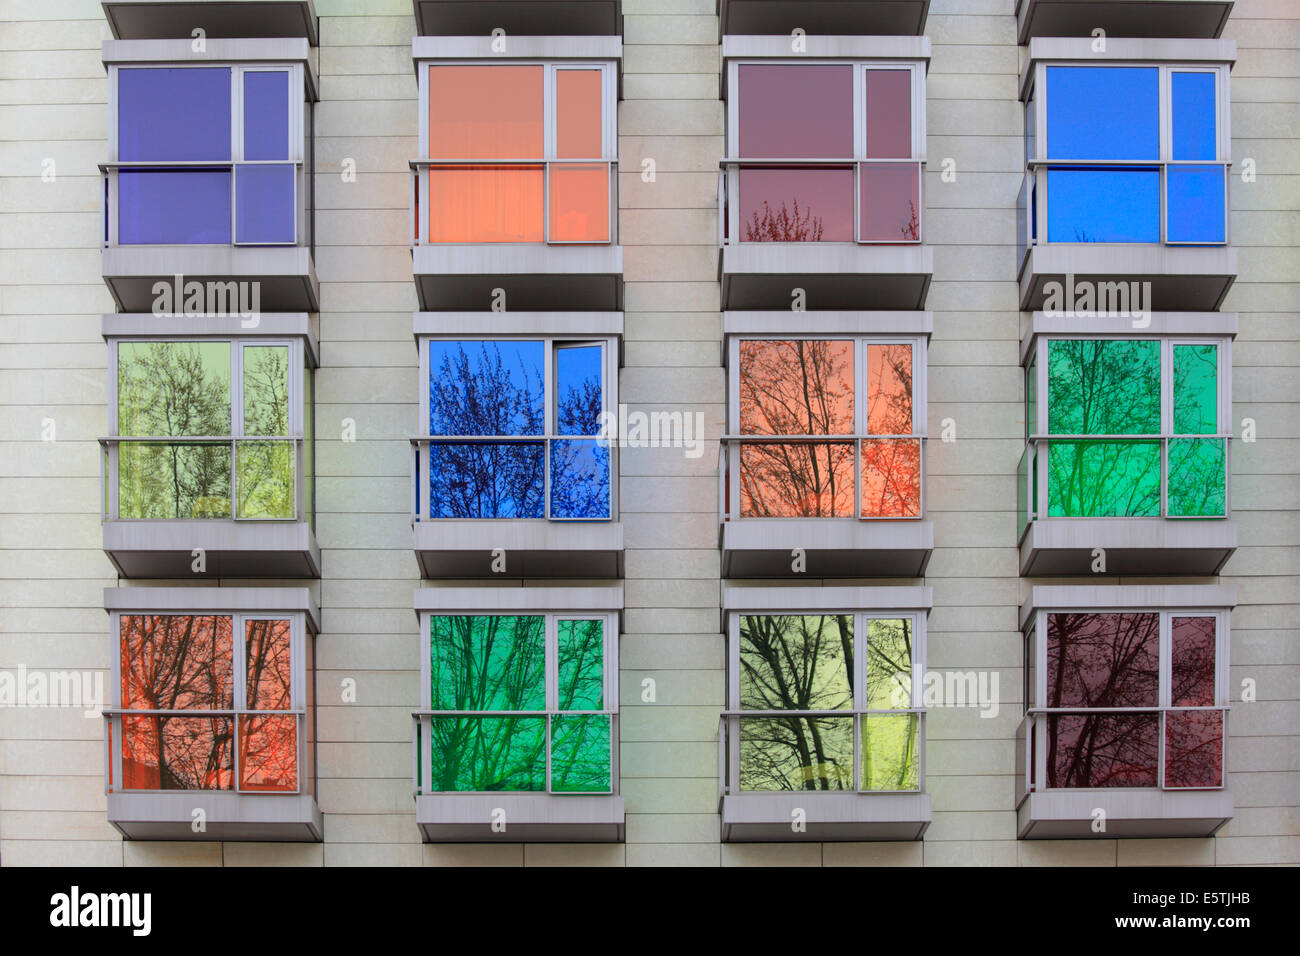 La couleur des fenêtres de l'hôtel Hesperia Bilbao, Bilbao, Espagne Banque D'Images